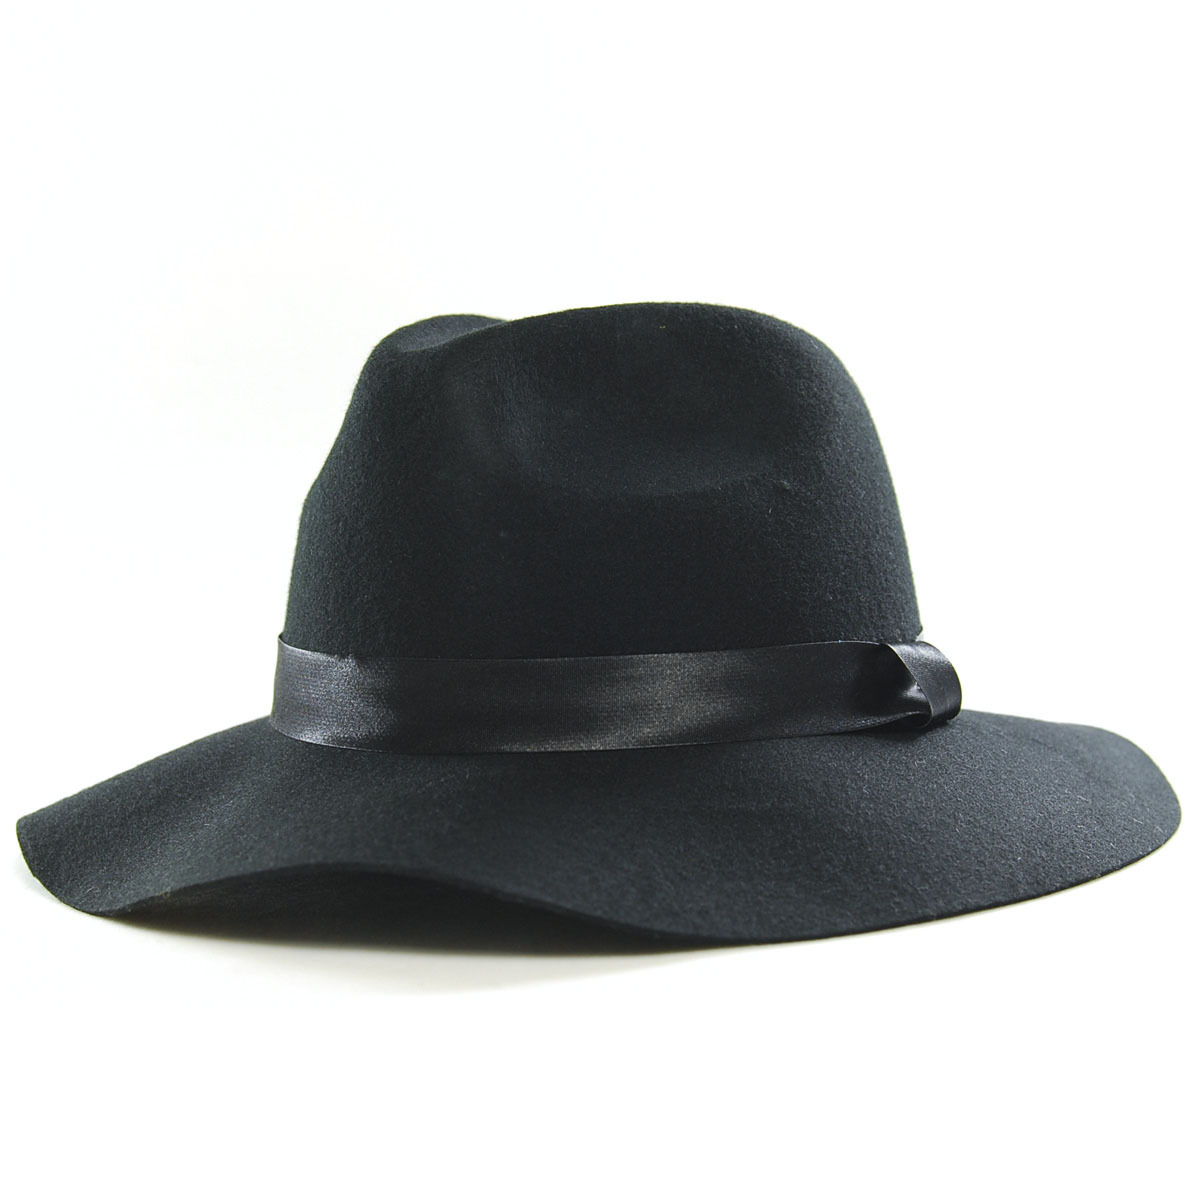 Captale pure woolen black vintage hat female autumn and winter